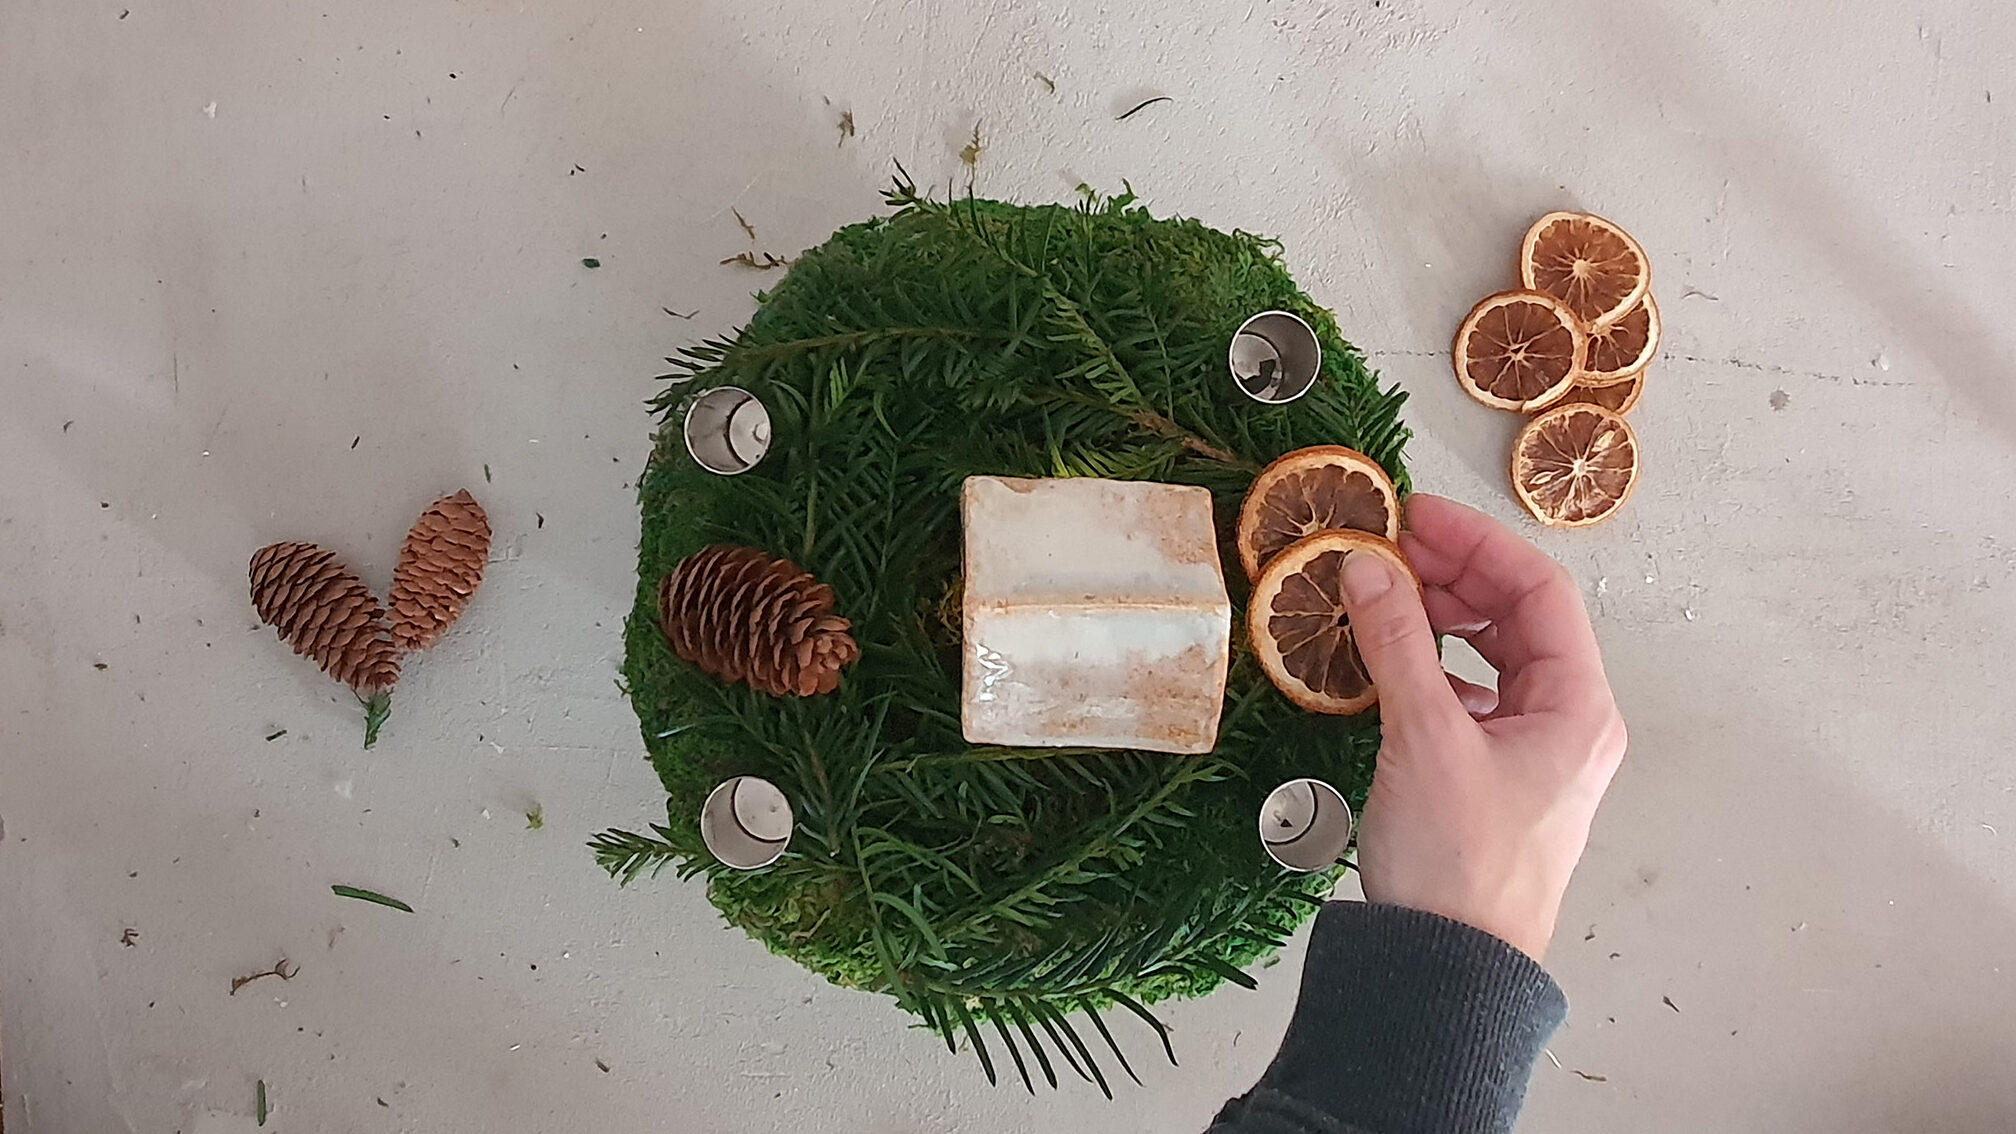 IKEA Hack aus OFTAST Schüsseln für Weihnachten Schritt 4: Kranz mit Orangenscheiben und Zapfen dekorieren